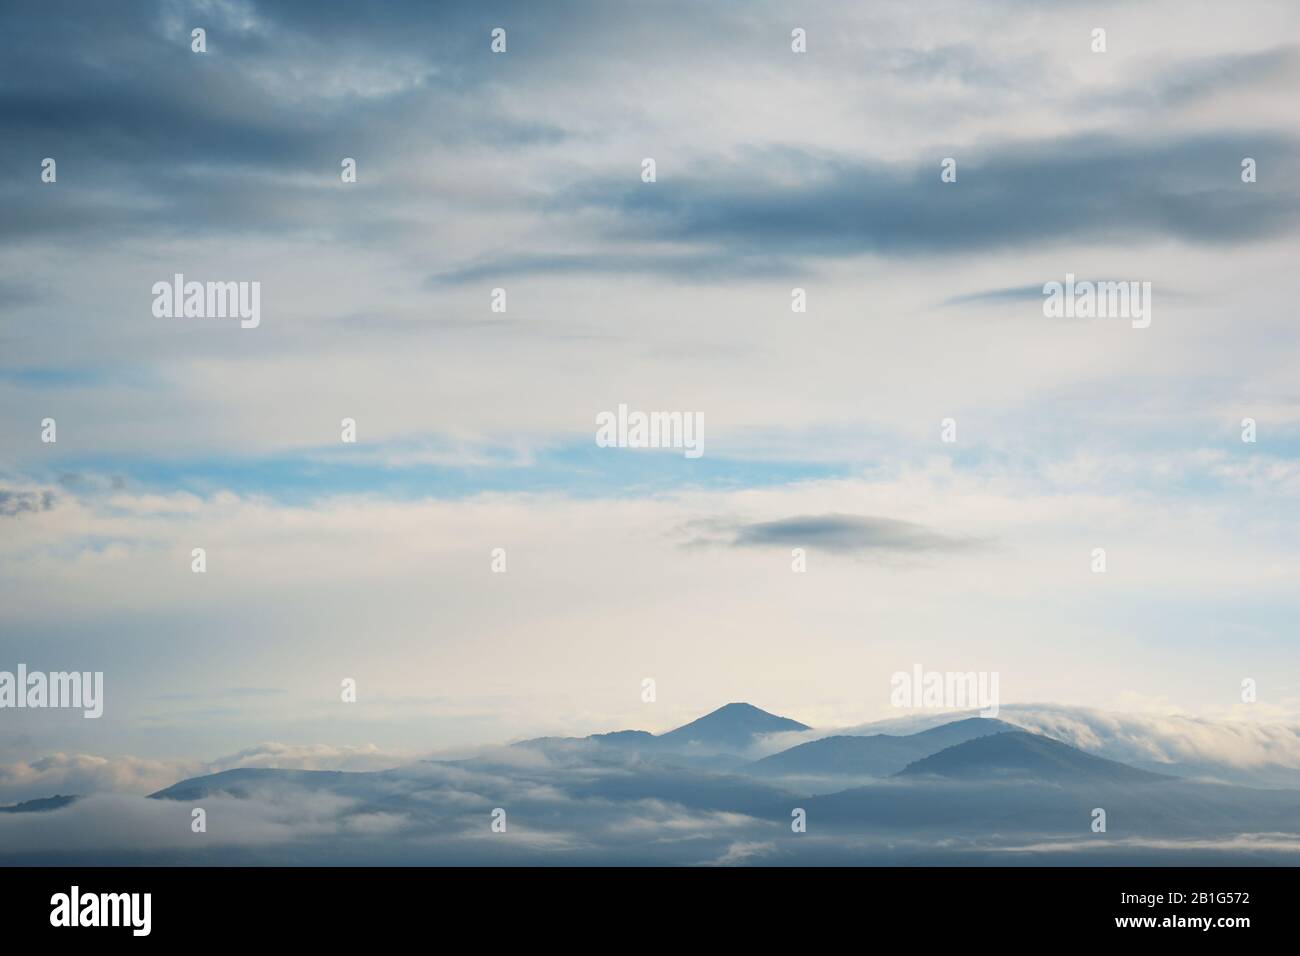 Paysage de nuages autour de la chaîne de montagnes et ciel couvert Banque D'Images